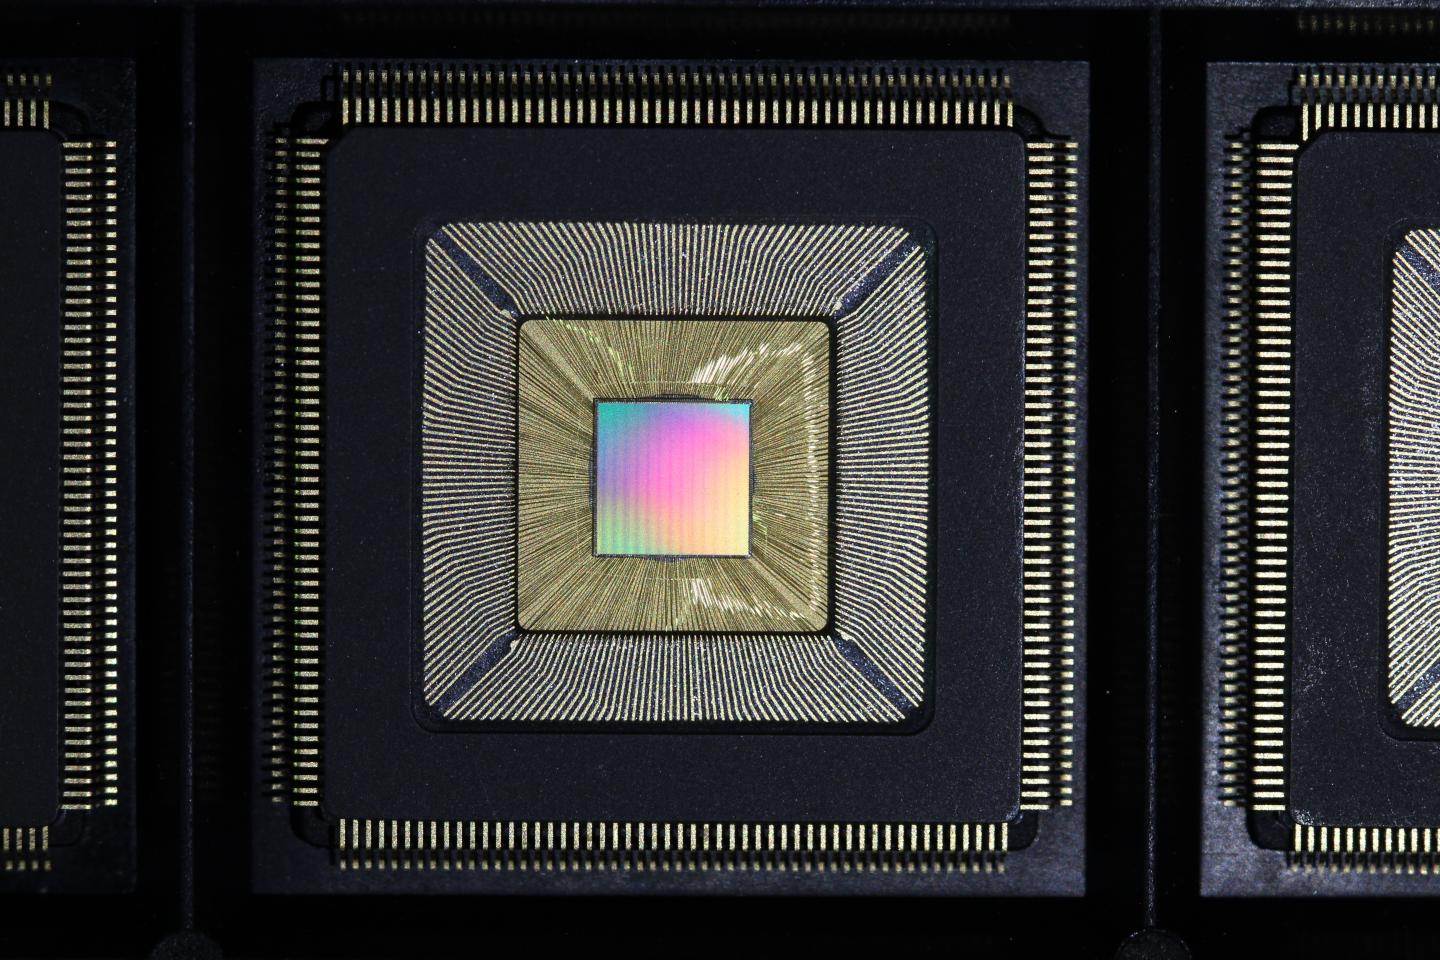 Чип процессора. Процессорный чип. Процессор 2016 г.. Система на кристалле многоядерные ИС.